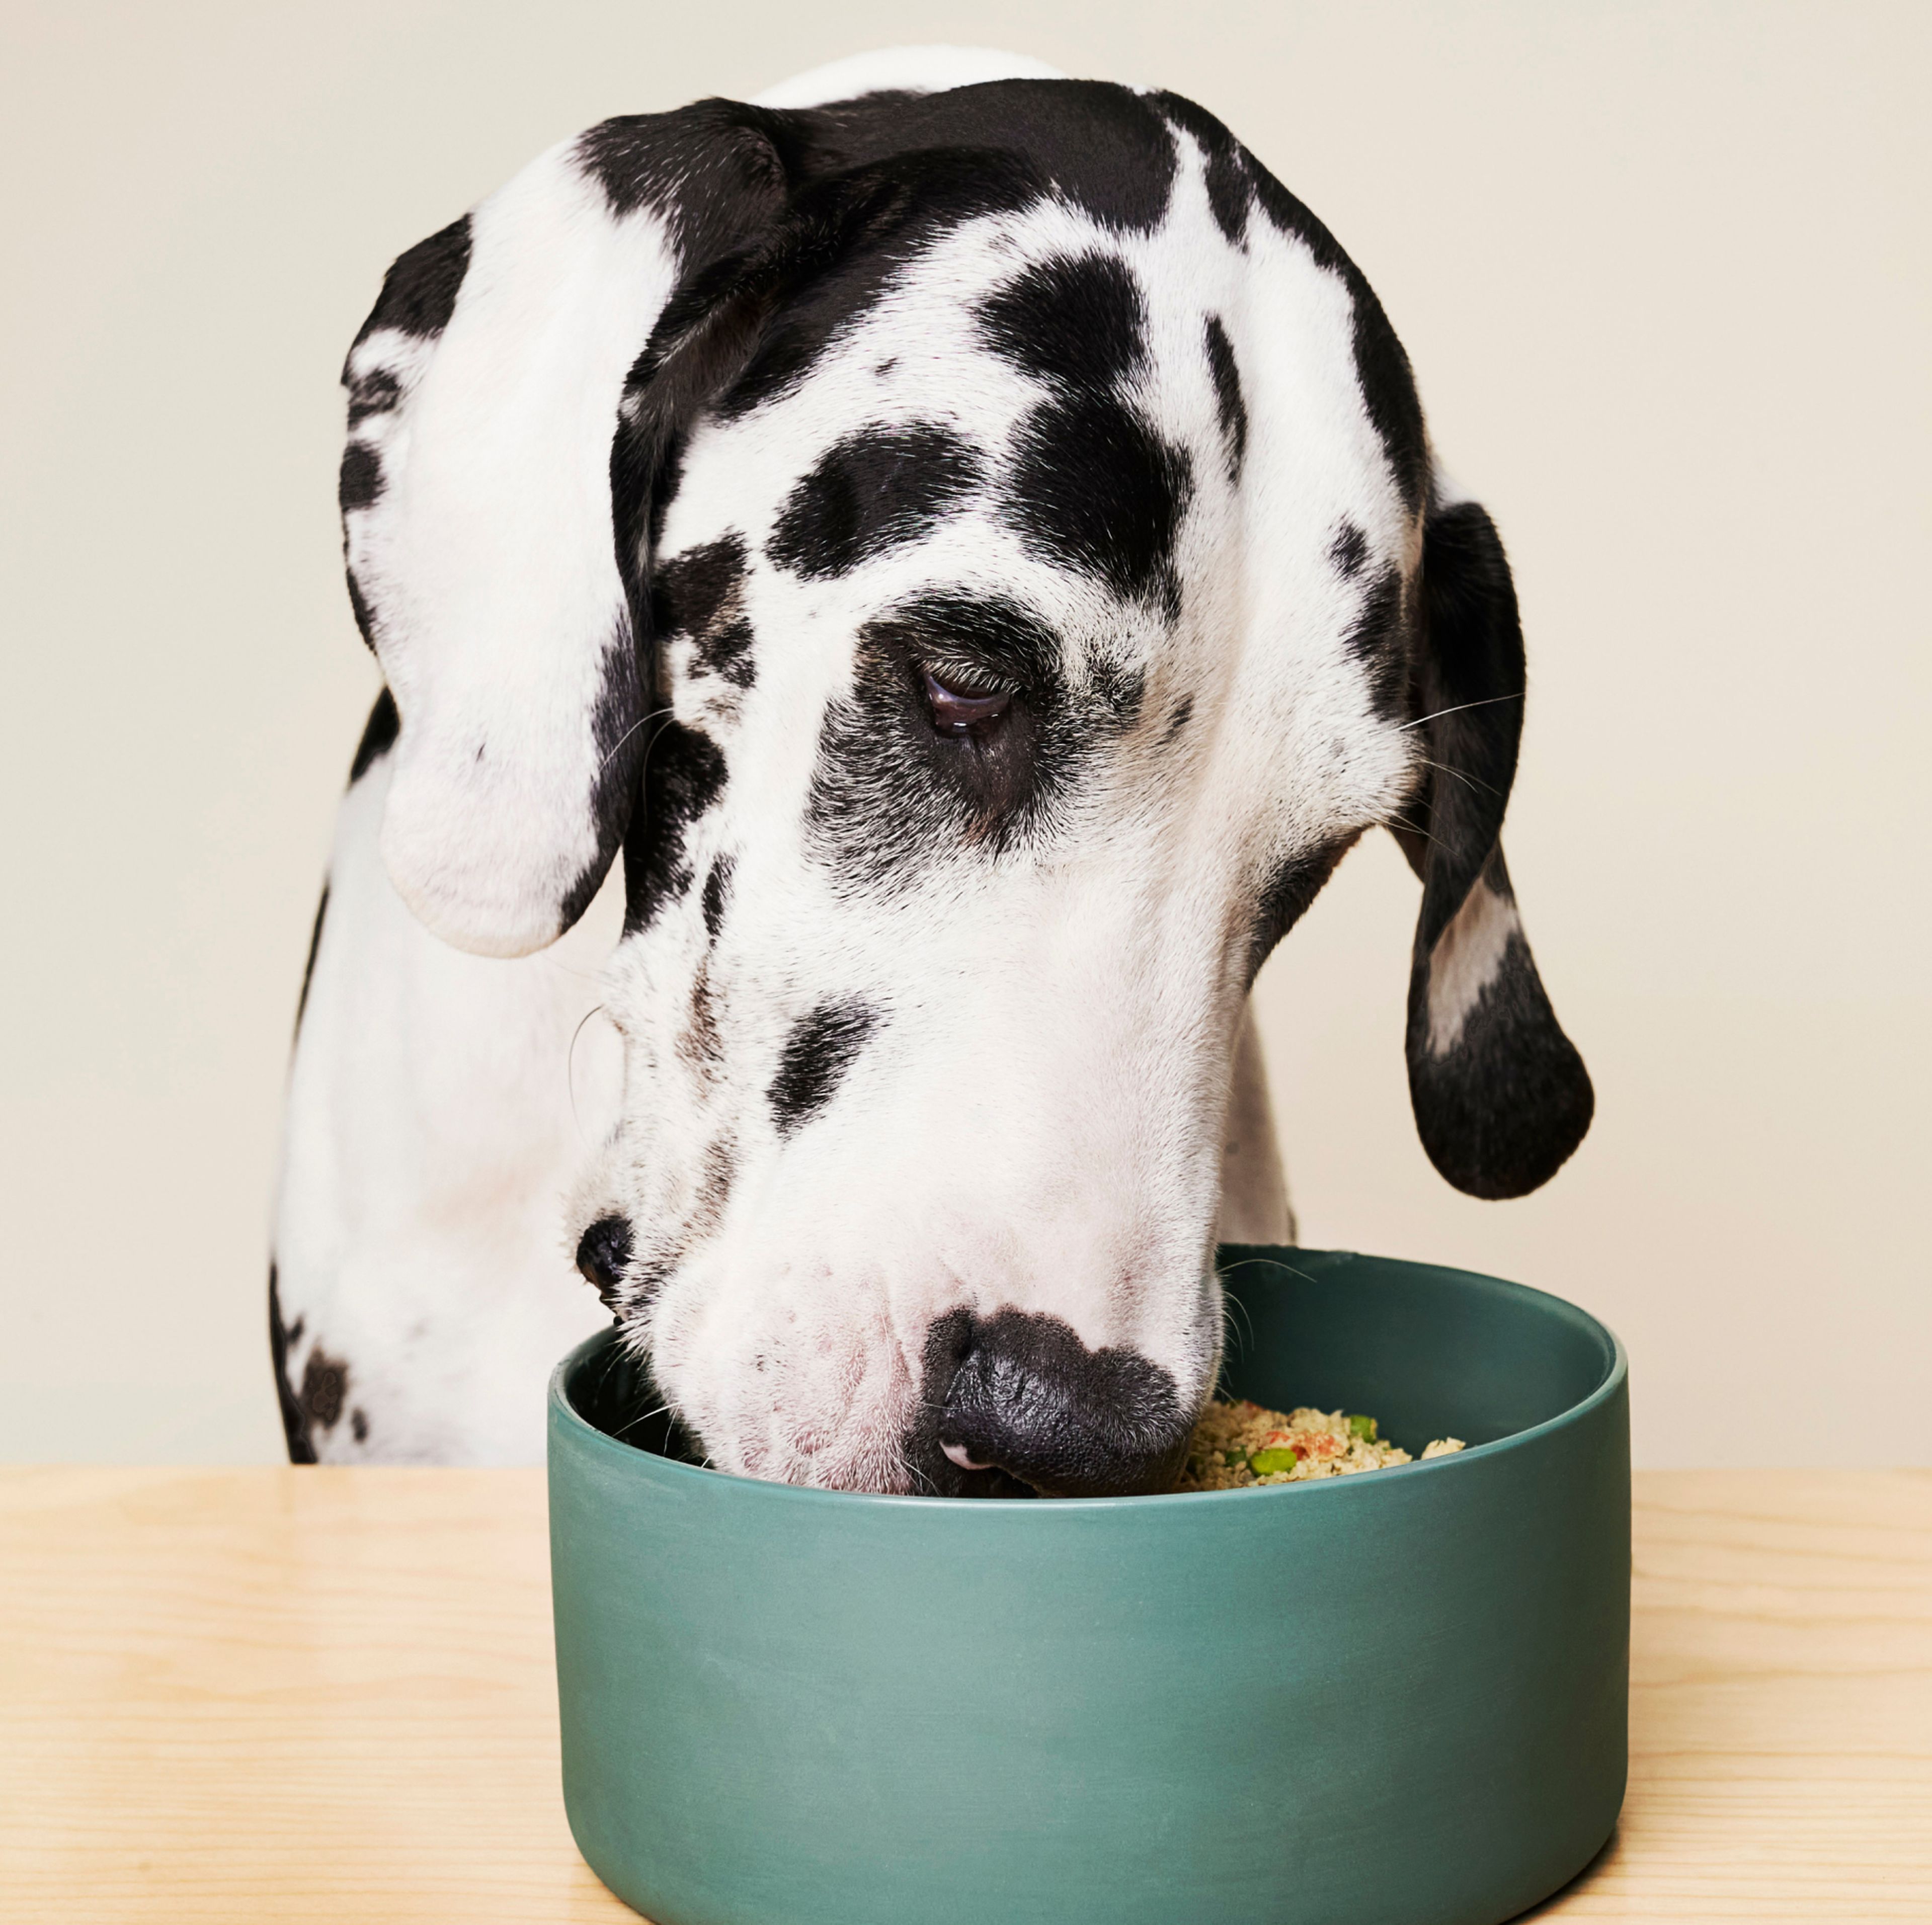 Dog eating mixed bowl